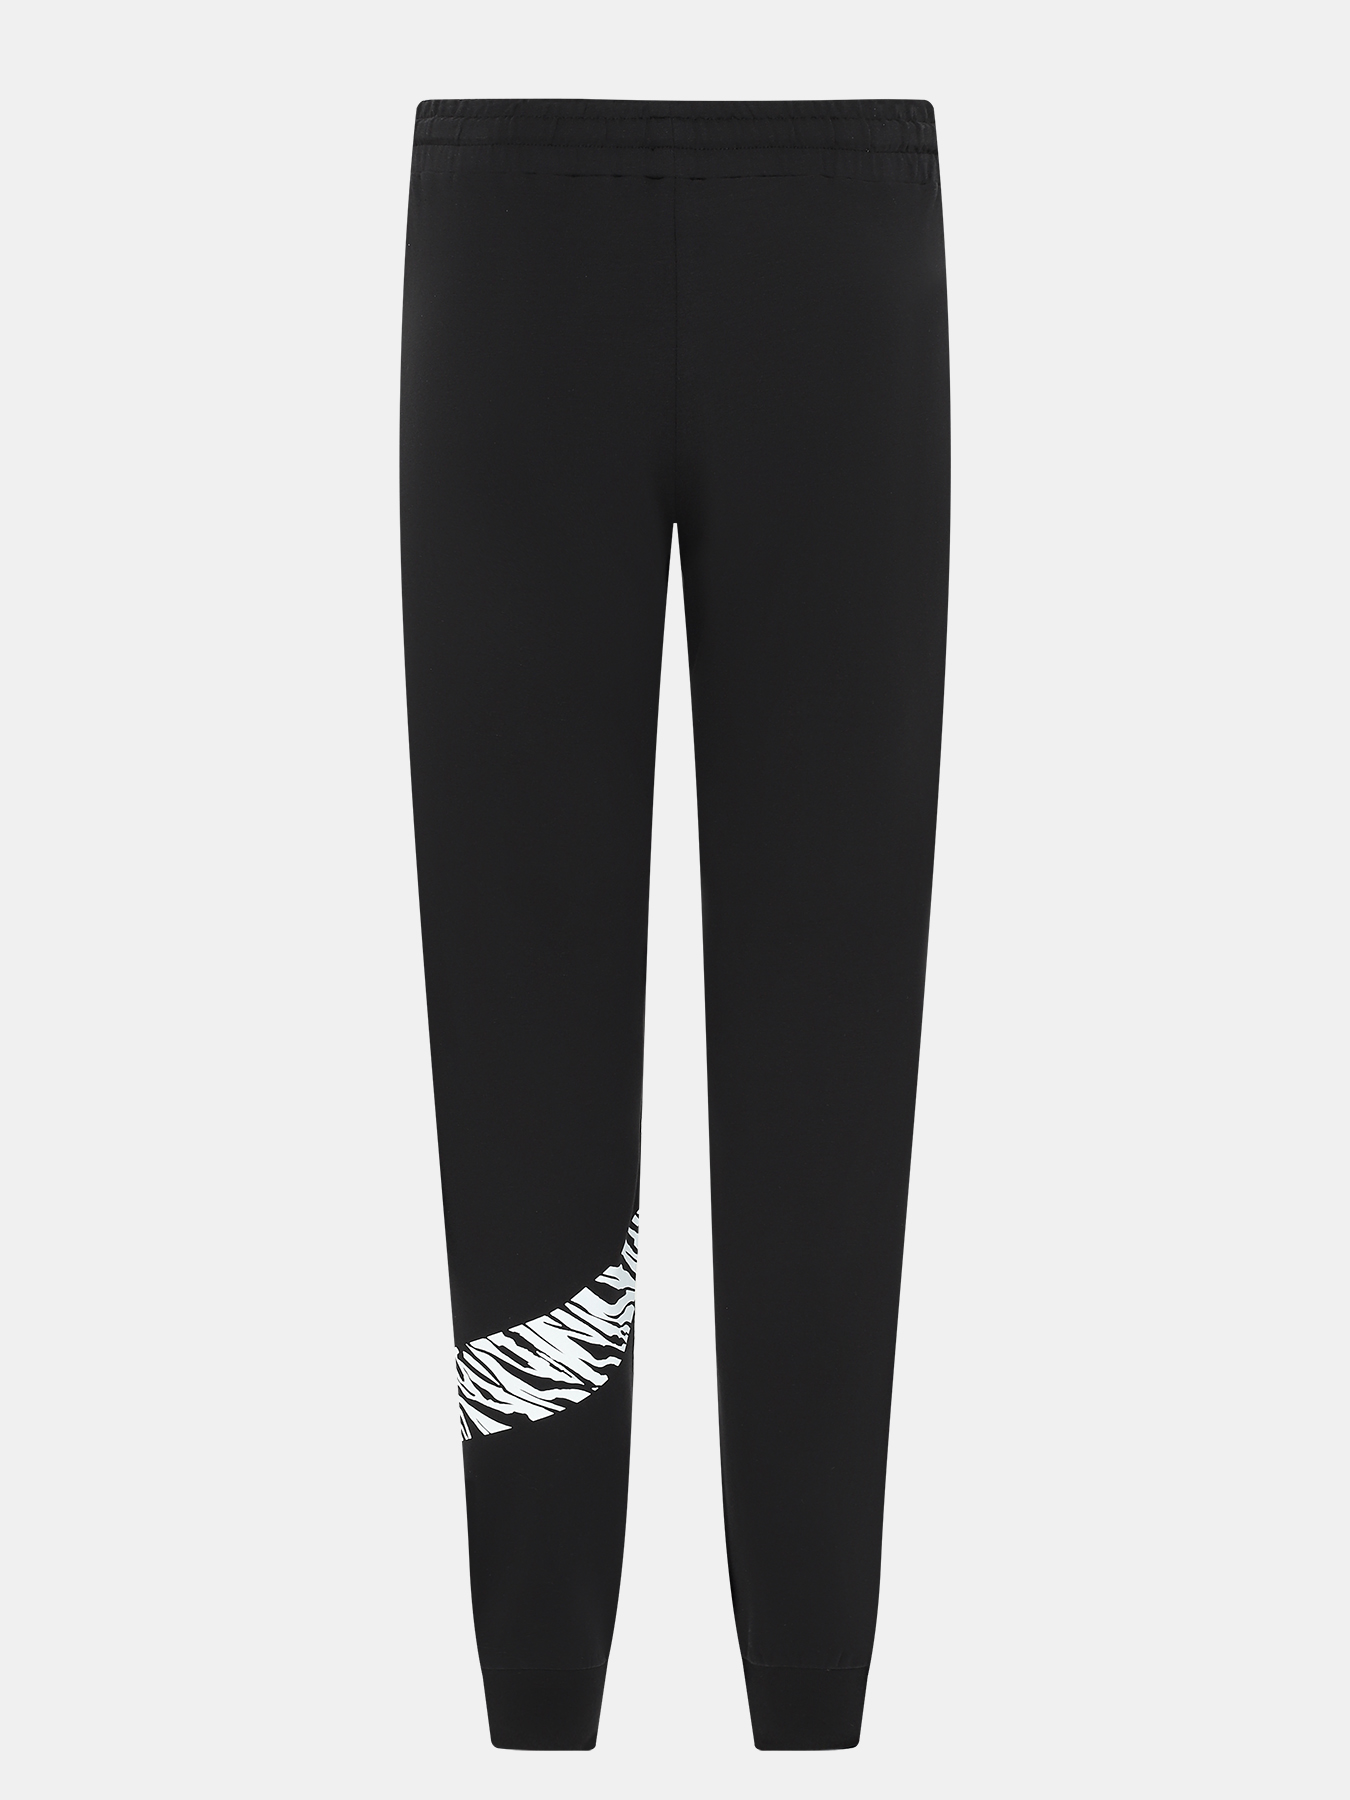 Спортивные брюки EA7 Emporio Armani 410064-043, цвет черный, размер 44-46 - фото 3